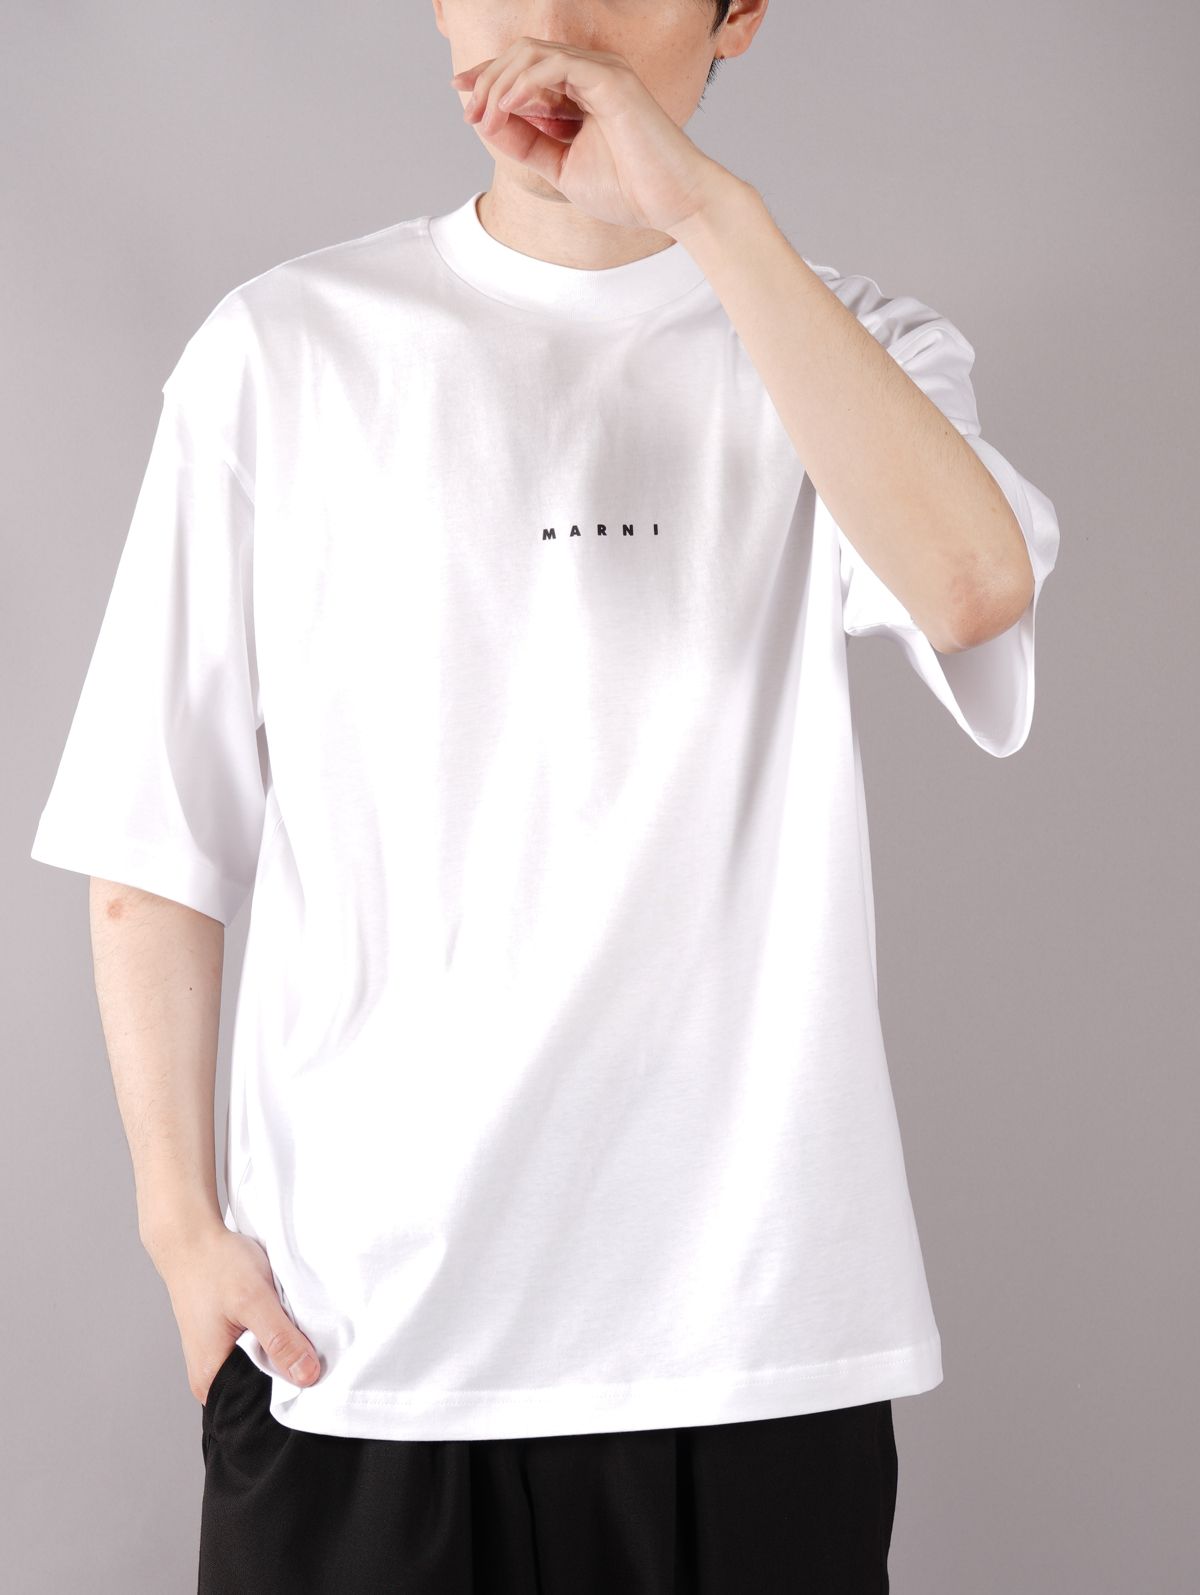 MARNI - 【ラスト1点】 LOGO T-SHIRT / ロゴ Tシャツ / オーバー ...